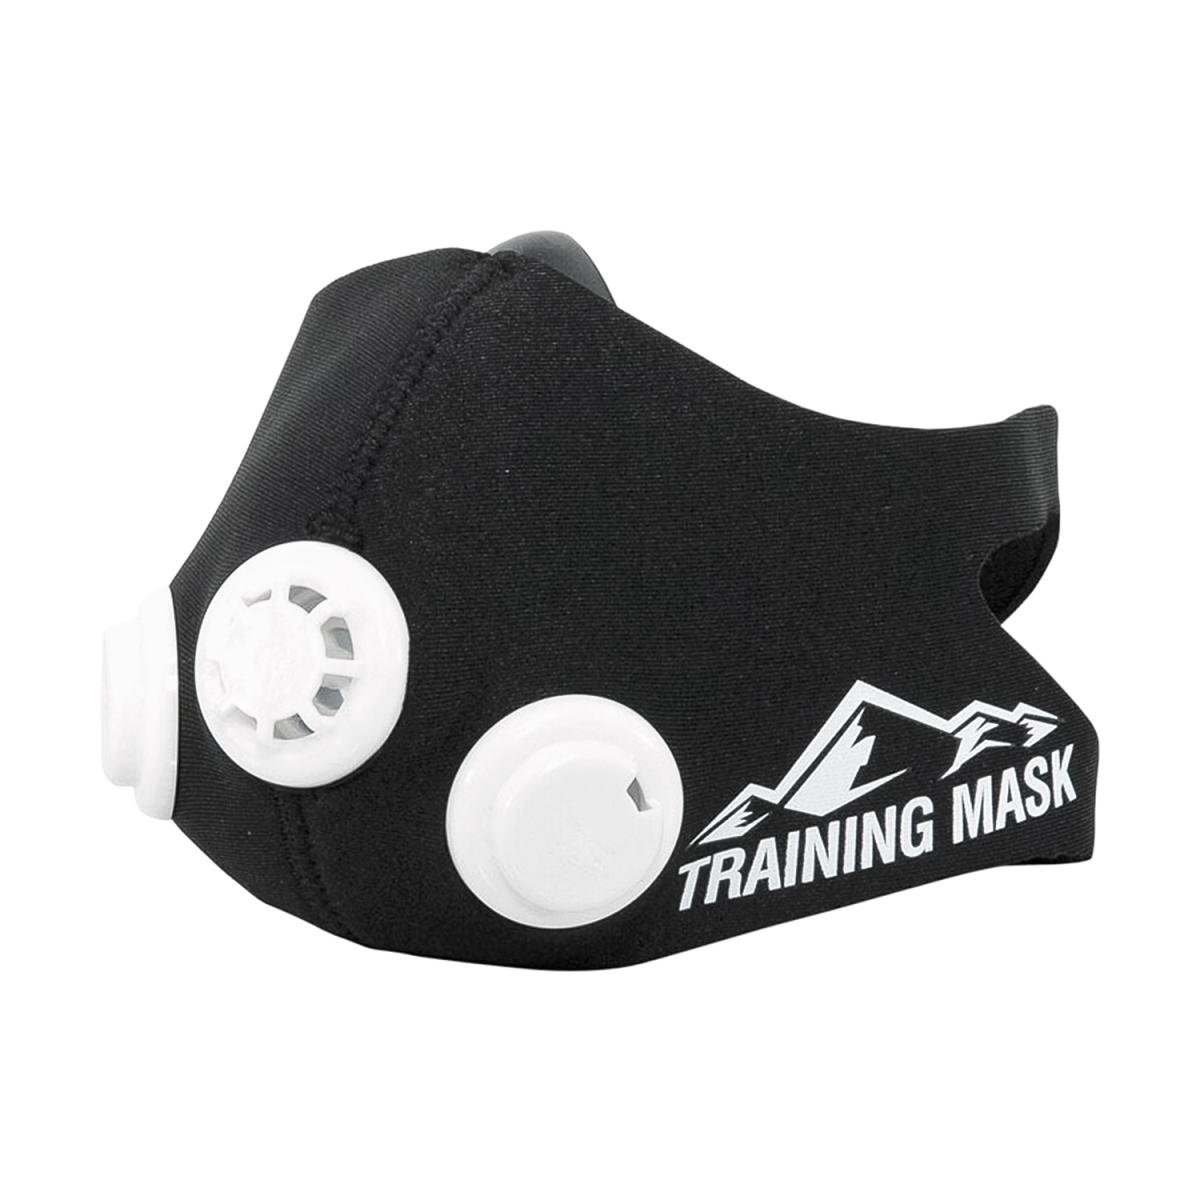 Тренировочная маска "Elevation Training Mask 2.0"